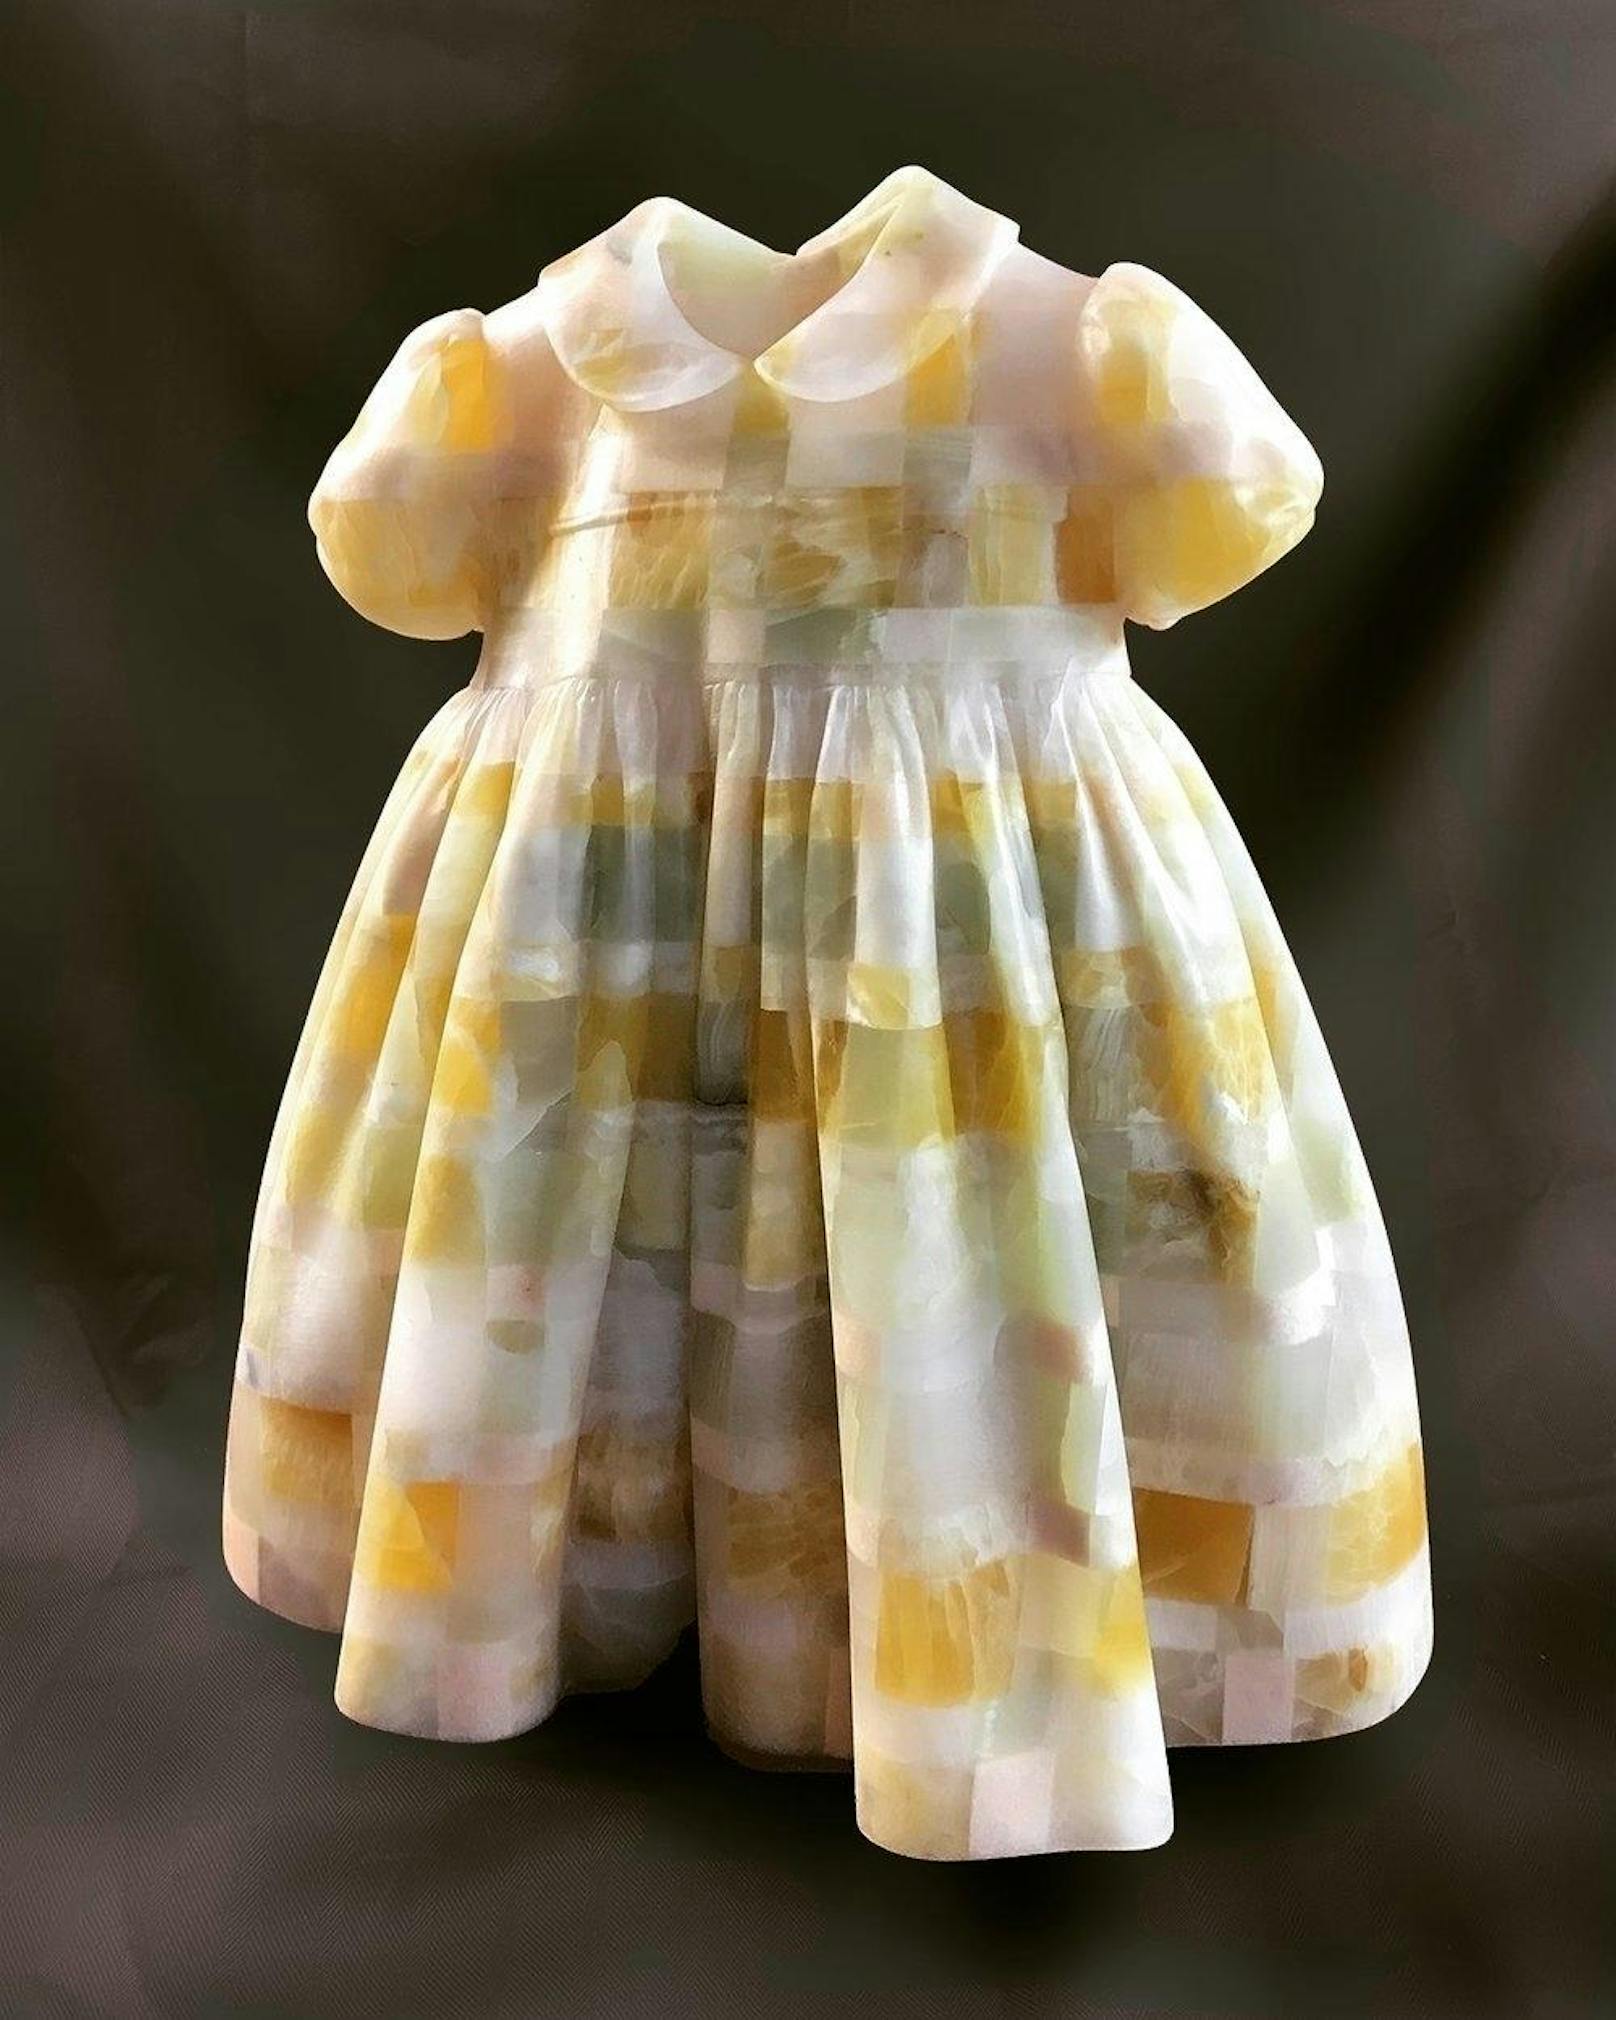 Federleicht und unschuldig sieht dieses Kleid aus: "Little Girl's Dresses" heißt eine Serie, die Barbara Segal gemacht hat. Onyx und Marmor wurden so dünn verarbeitet, dass das Licht durchschimmert und es luftig wirken lässt.